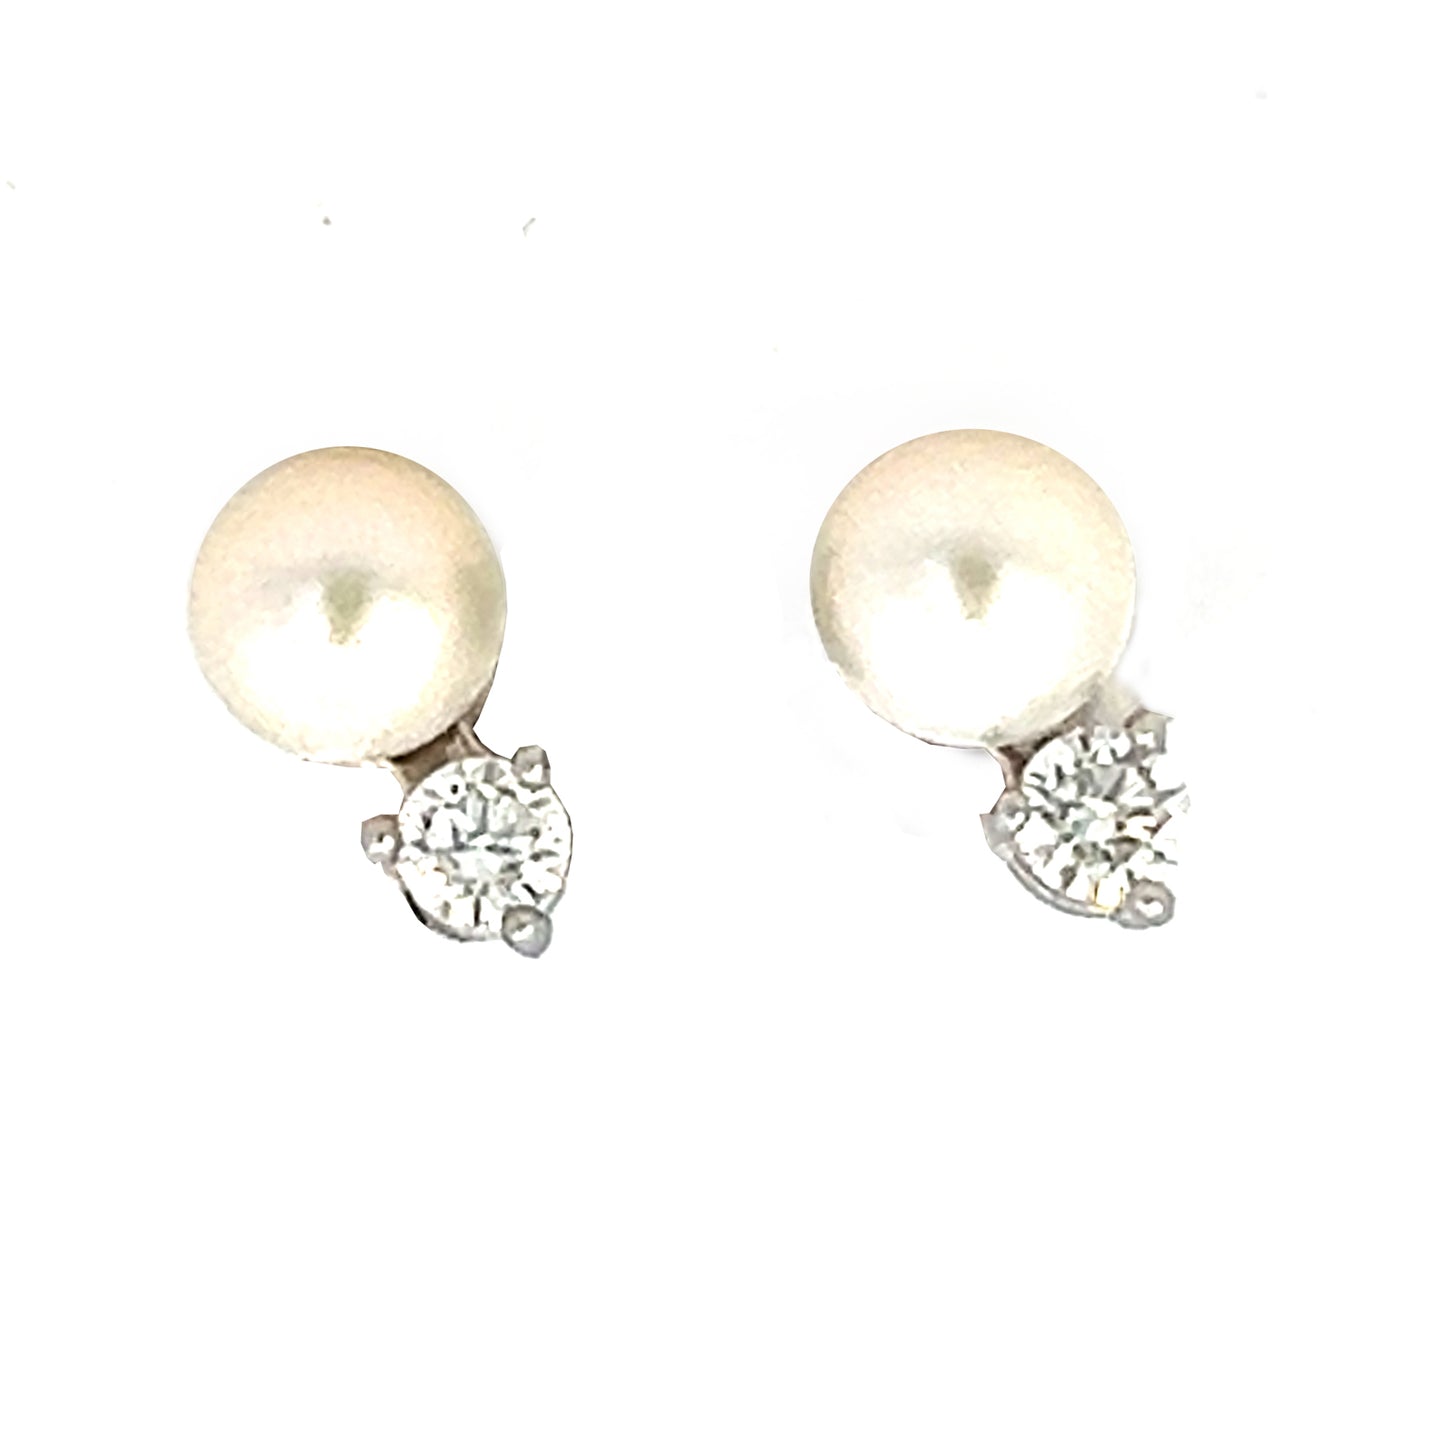 5mm Pearl and Diamond Stud  Earrings | Pearl Earrings Stud | 14k White Gold